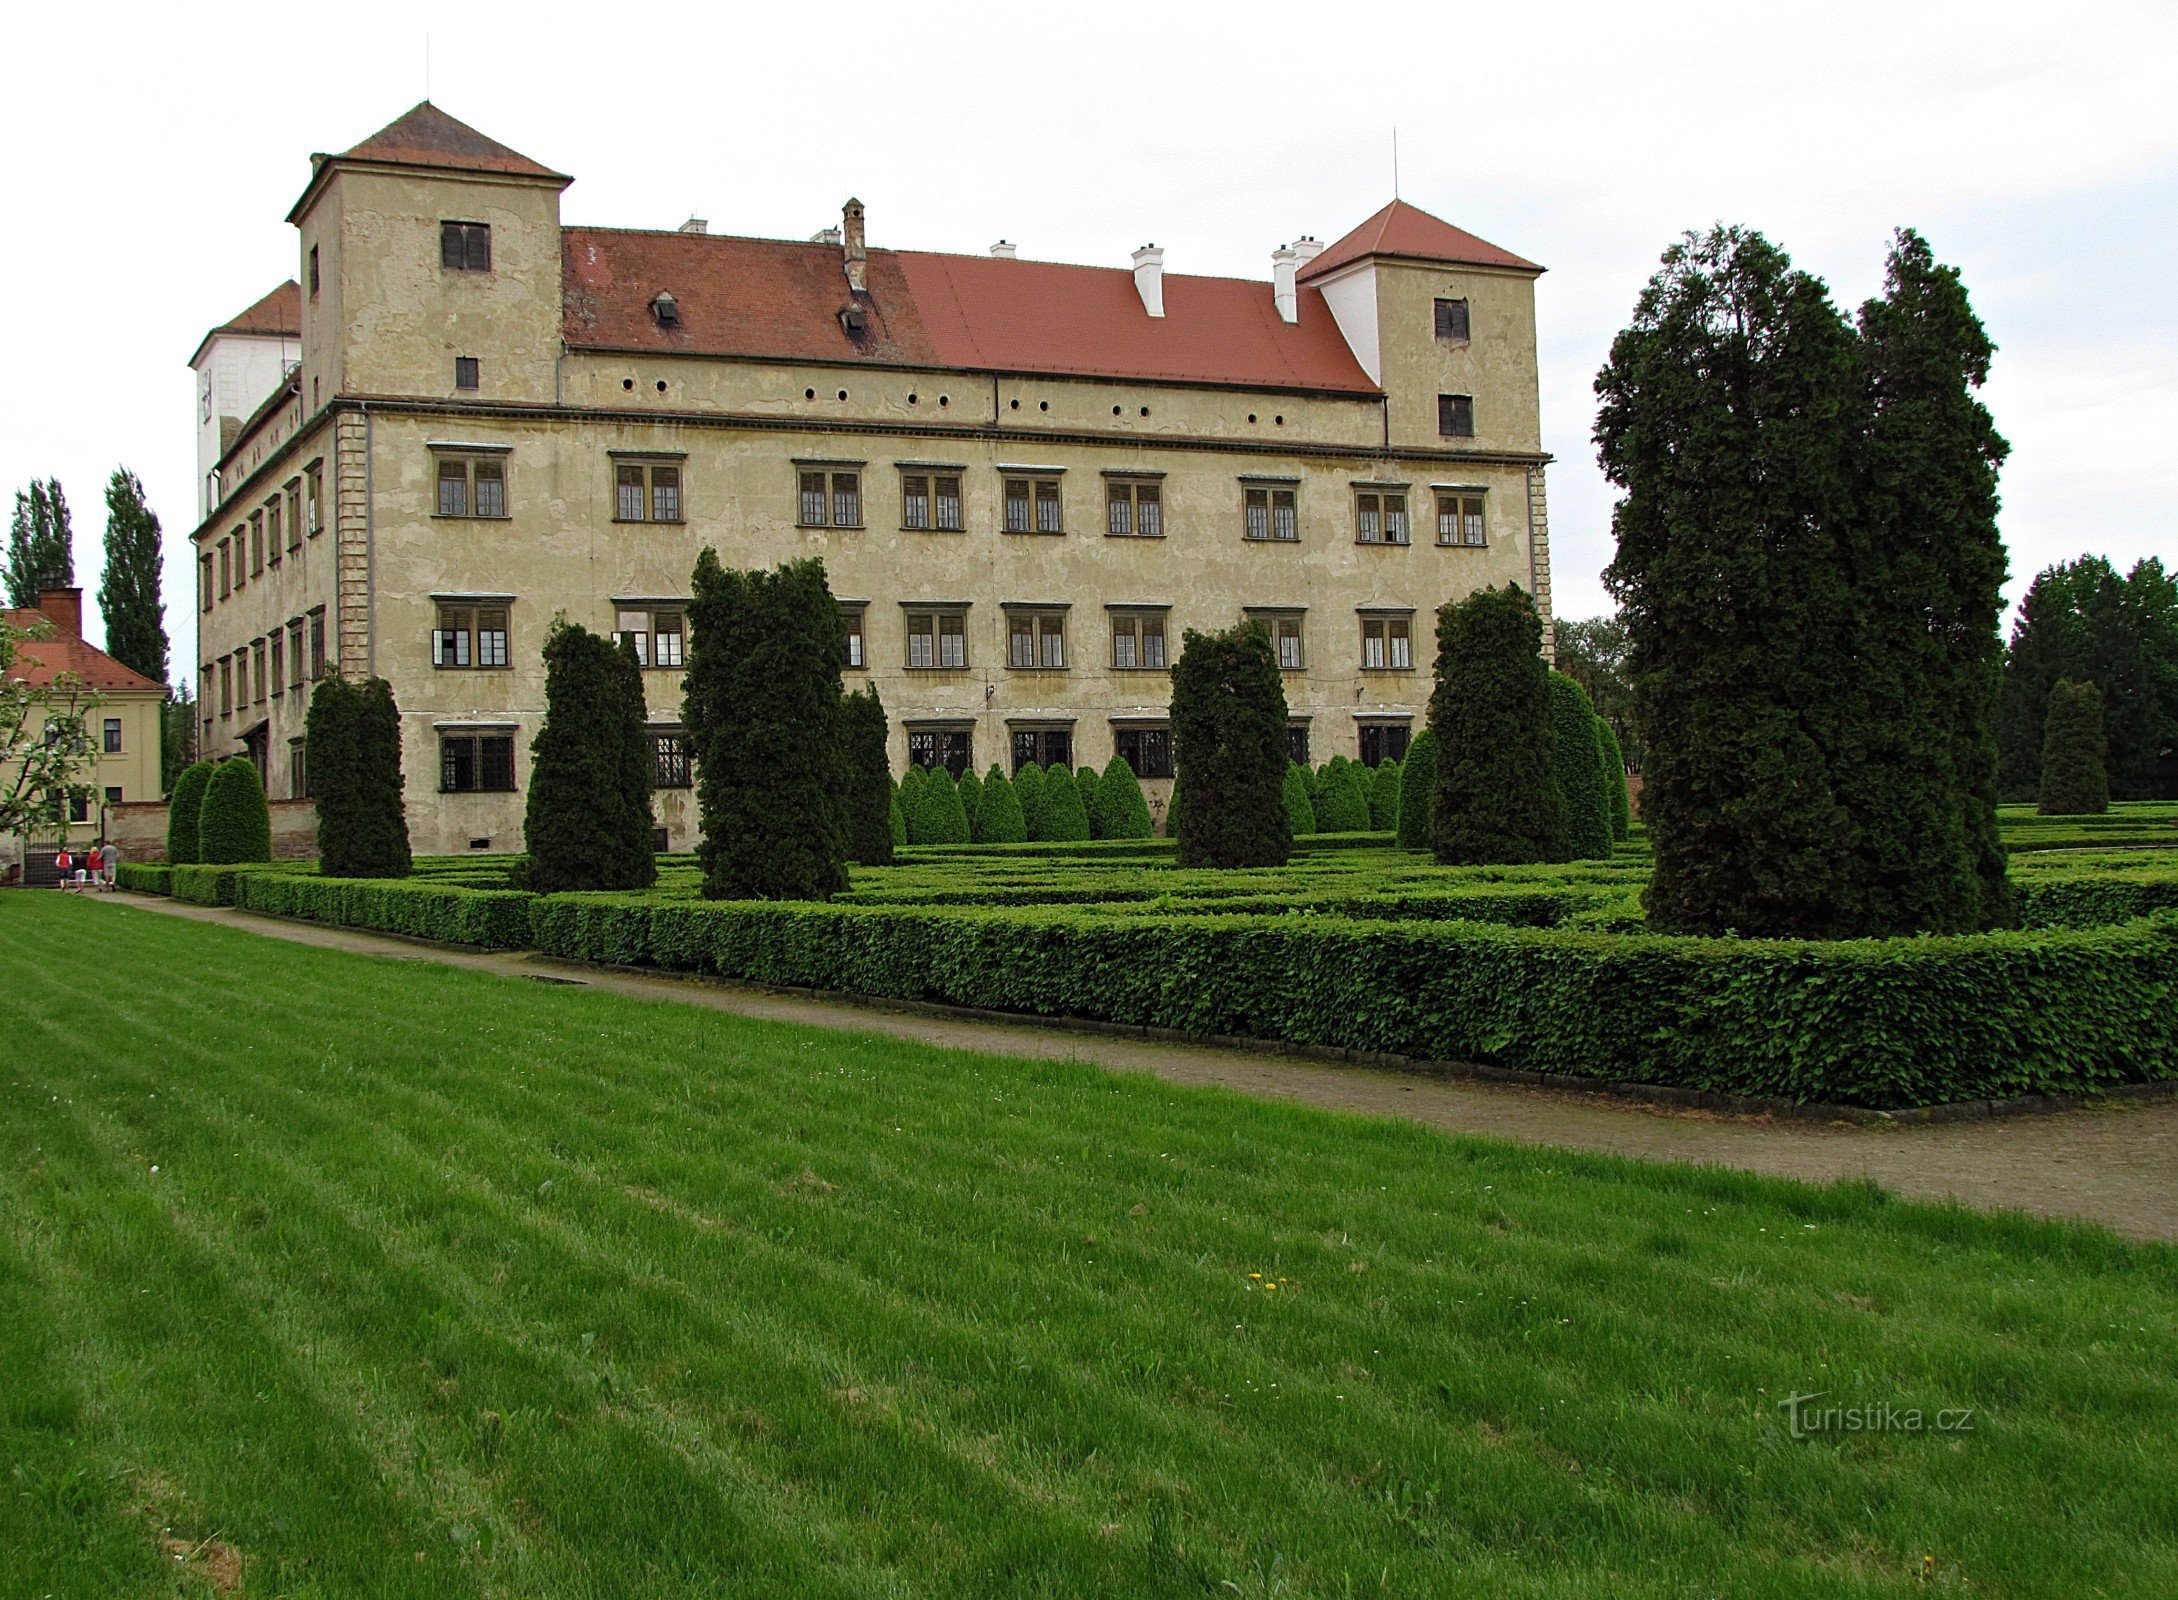 Jardín del castillo renacentista en Bučovice